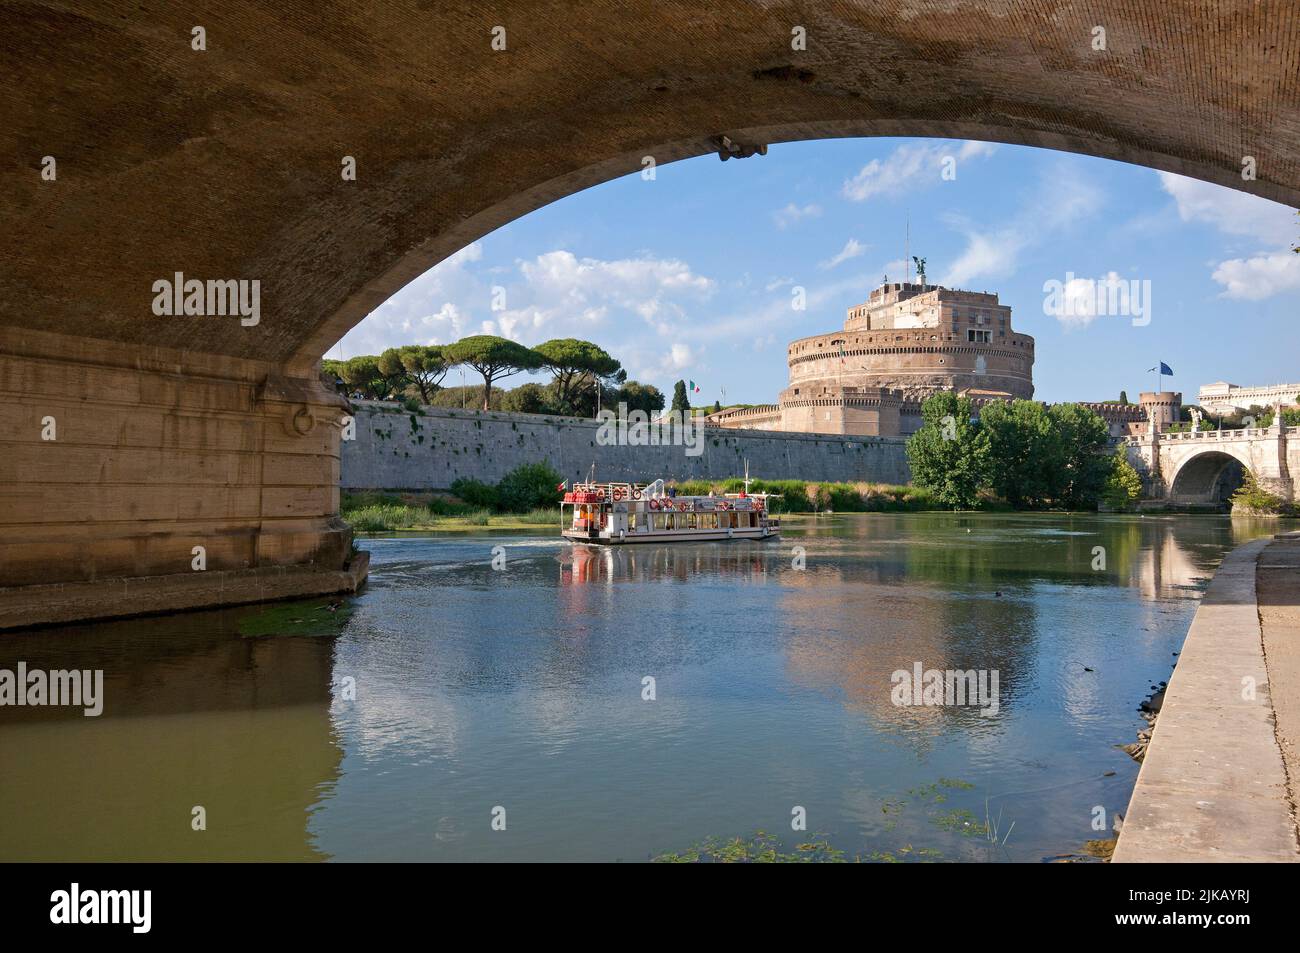 Río Tíber y Castel Sant'Angelo (Mausoleo de Adriano), vista bajo el puente Vittorio Emanuele II, Roma, Italia Foto de stock